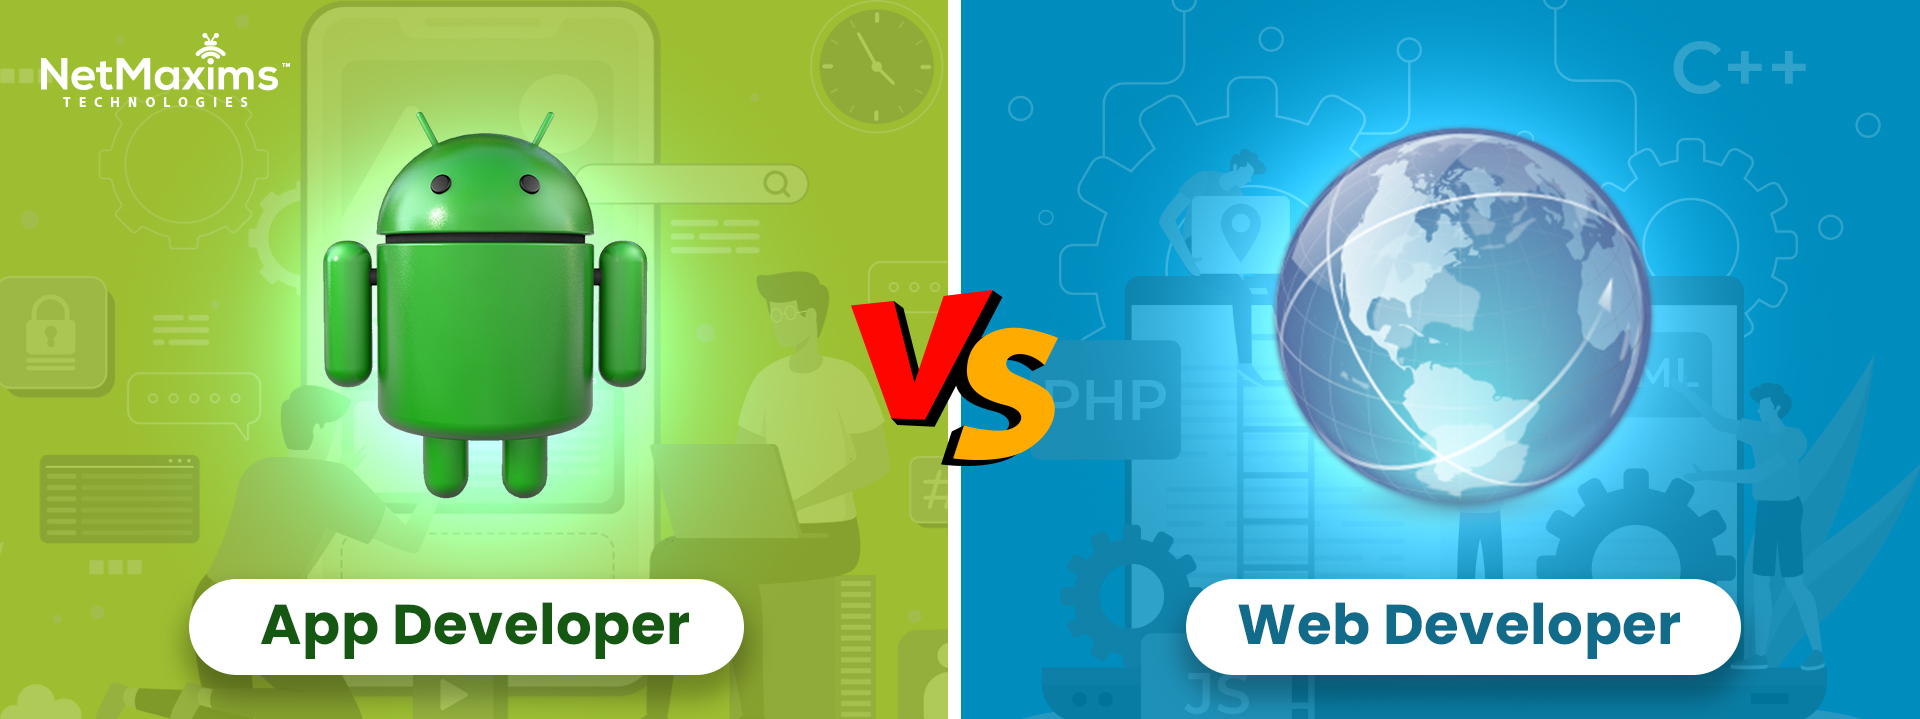 App Developer vs Web Developer